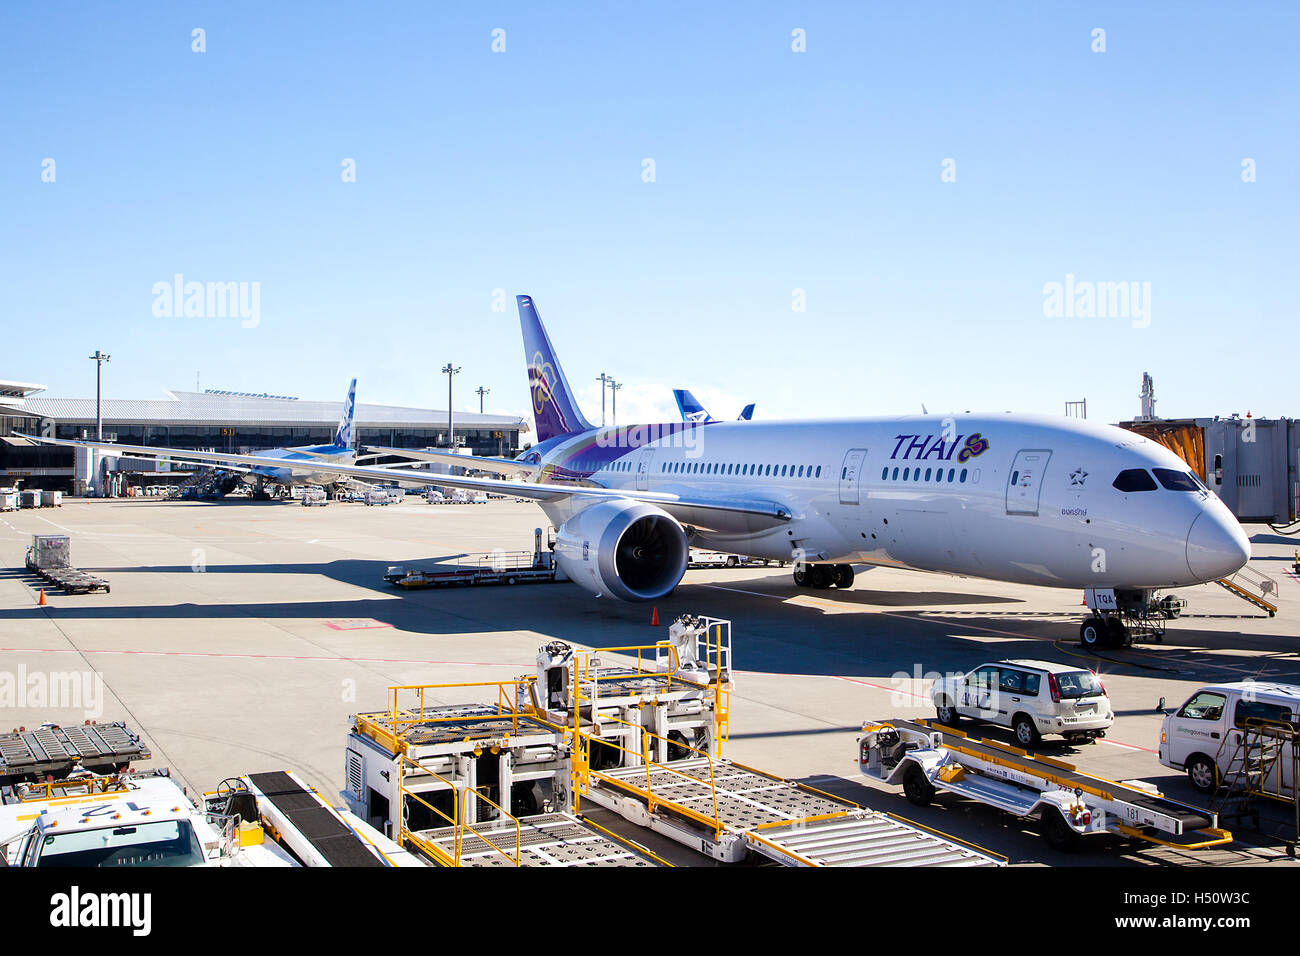 Tokyo, Giappone - 5 dicembre; 2014: un Thai Airways piano sottoposto a interventi di manutenzione sull'asfalto dell'aeroporto Narita di Tokyo. Foto Stock